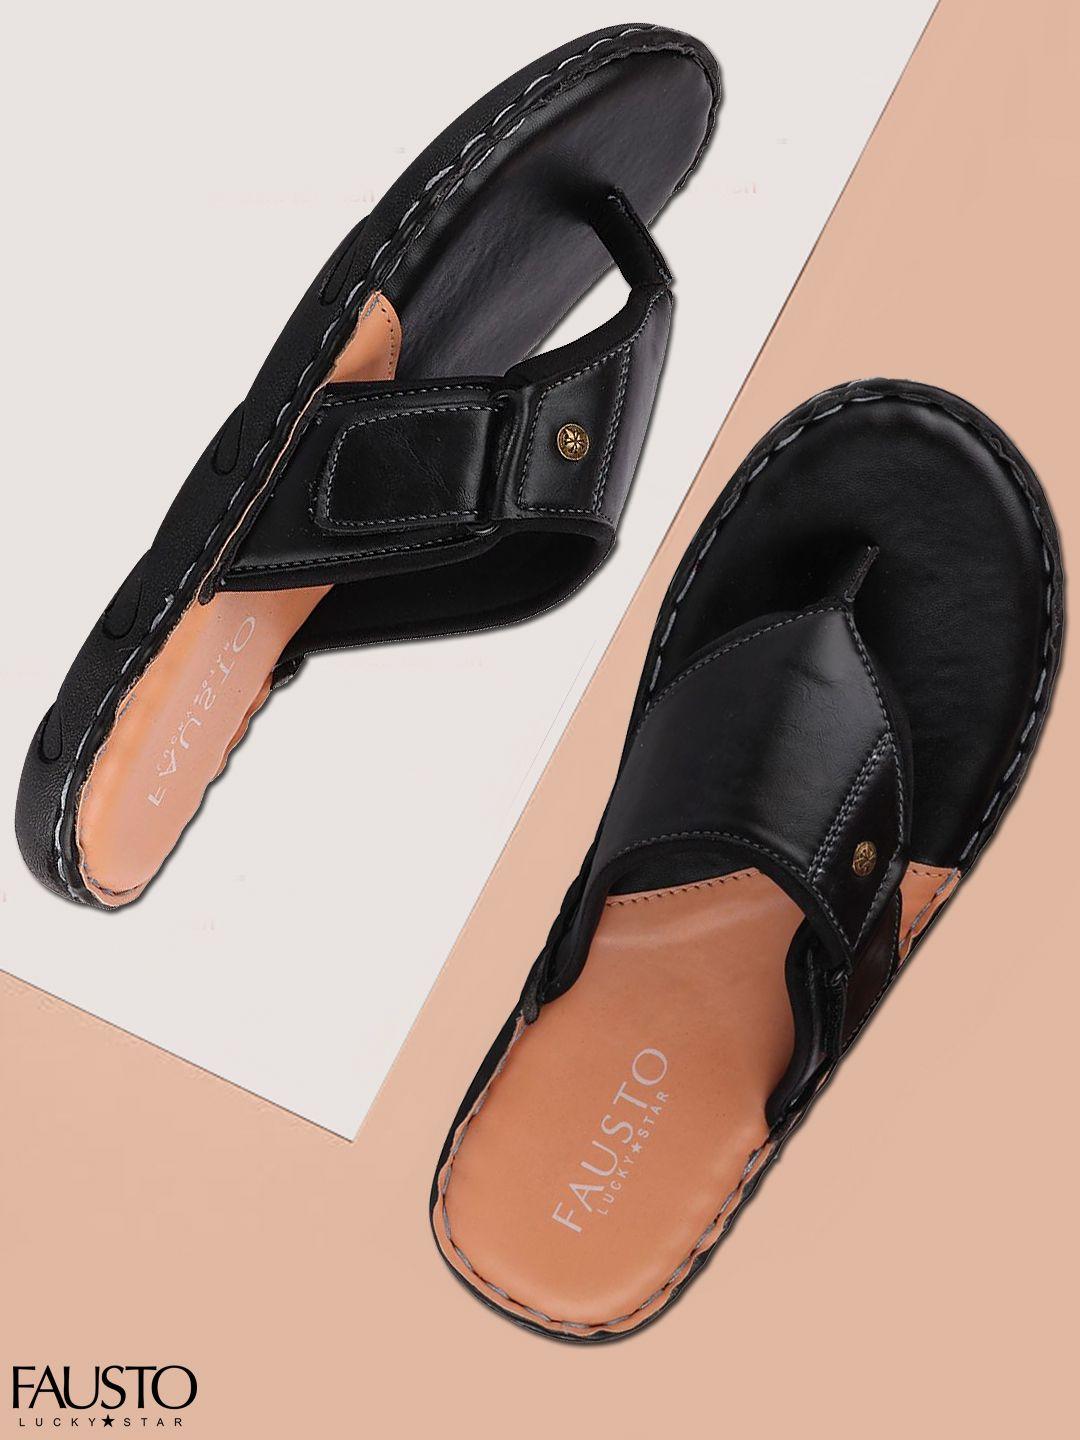 fausto-men-black-solid-comfort-sandals